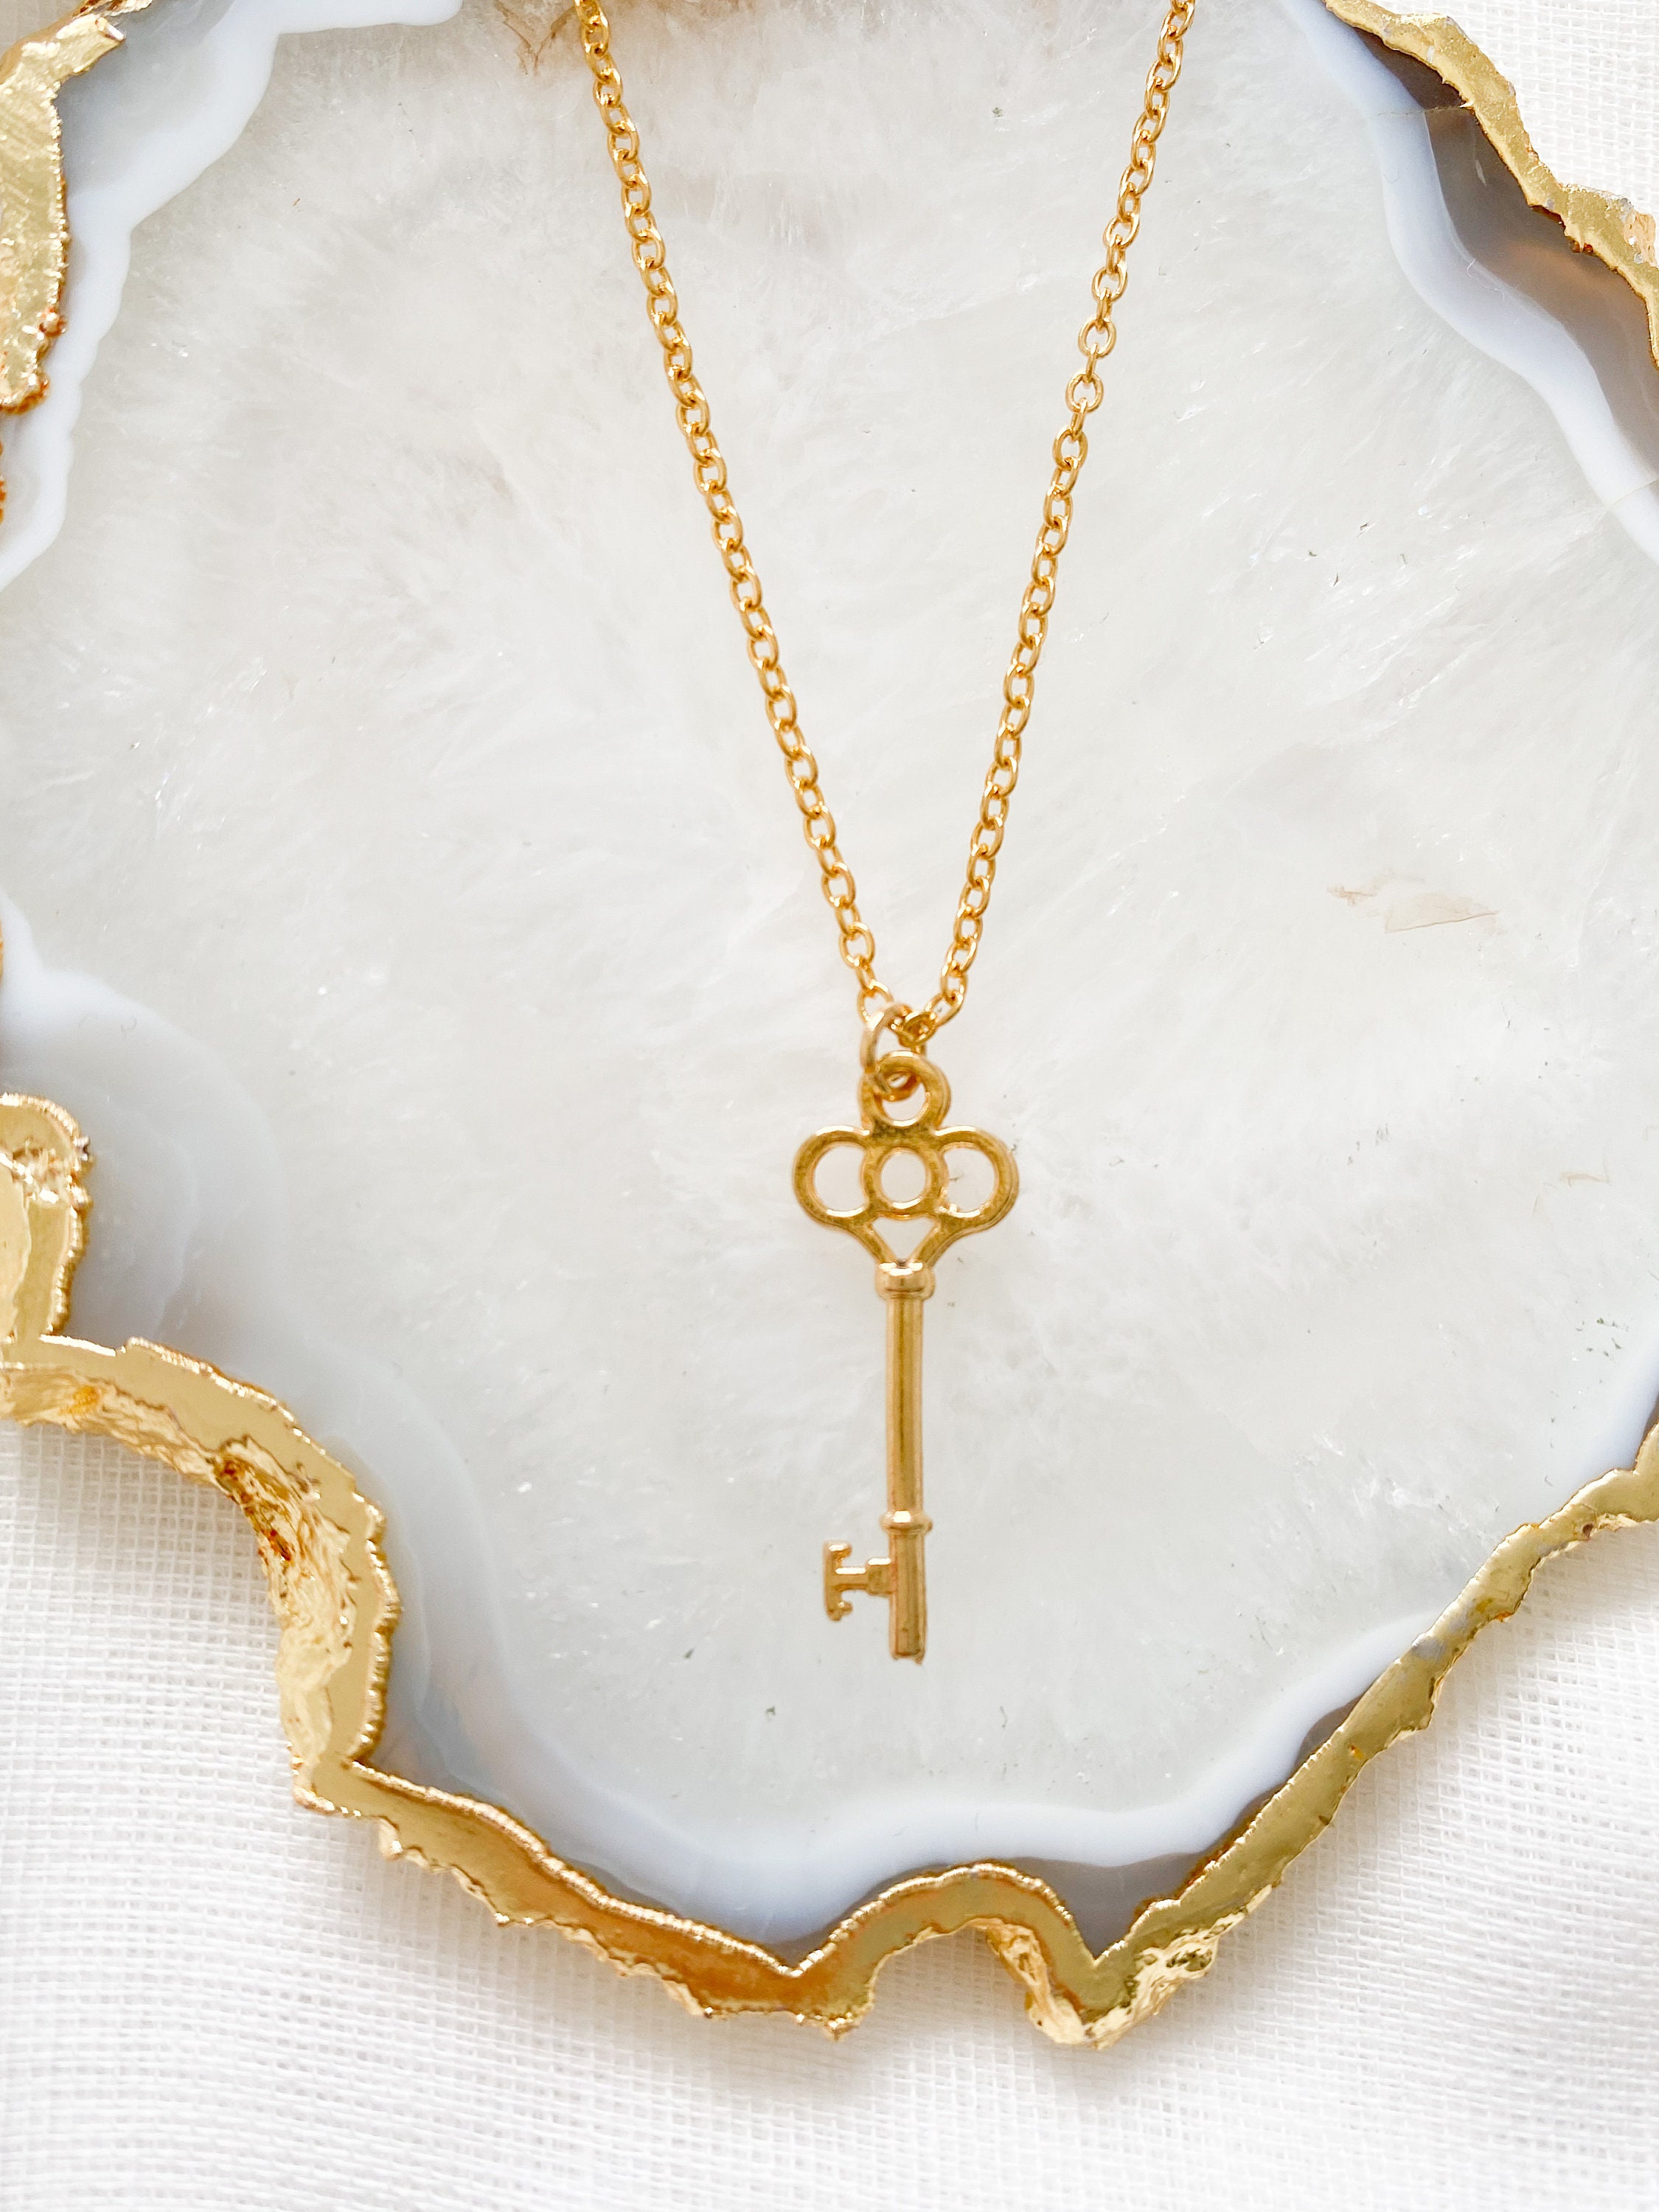 Key Necklace Gold Key Pendant 21st Birthday Gift dainty | Etsy